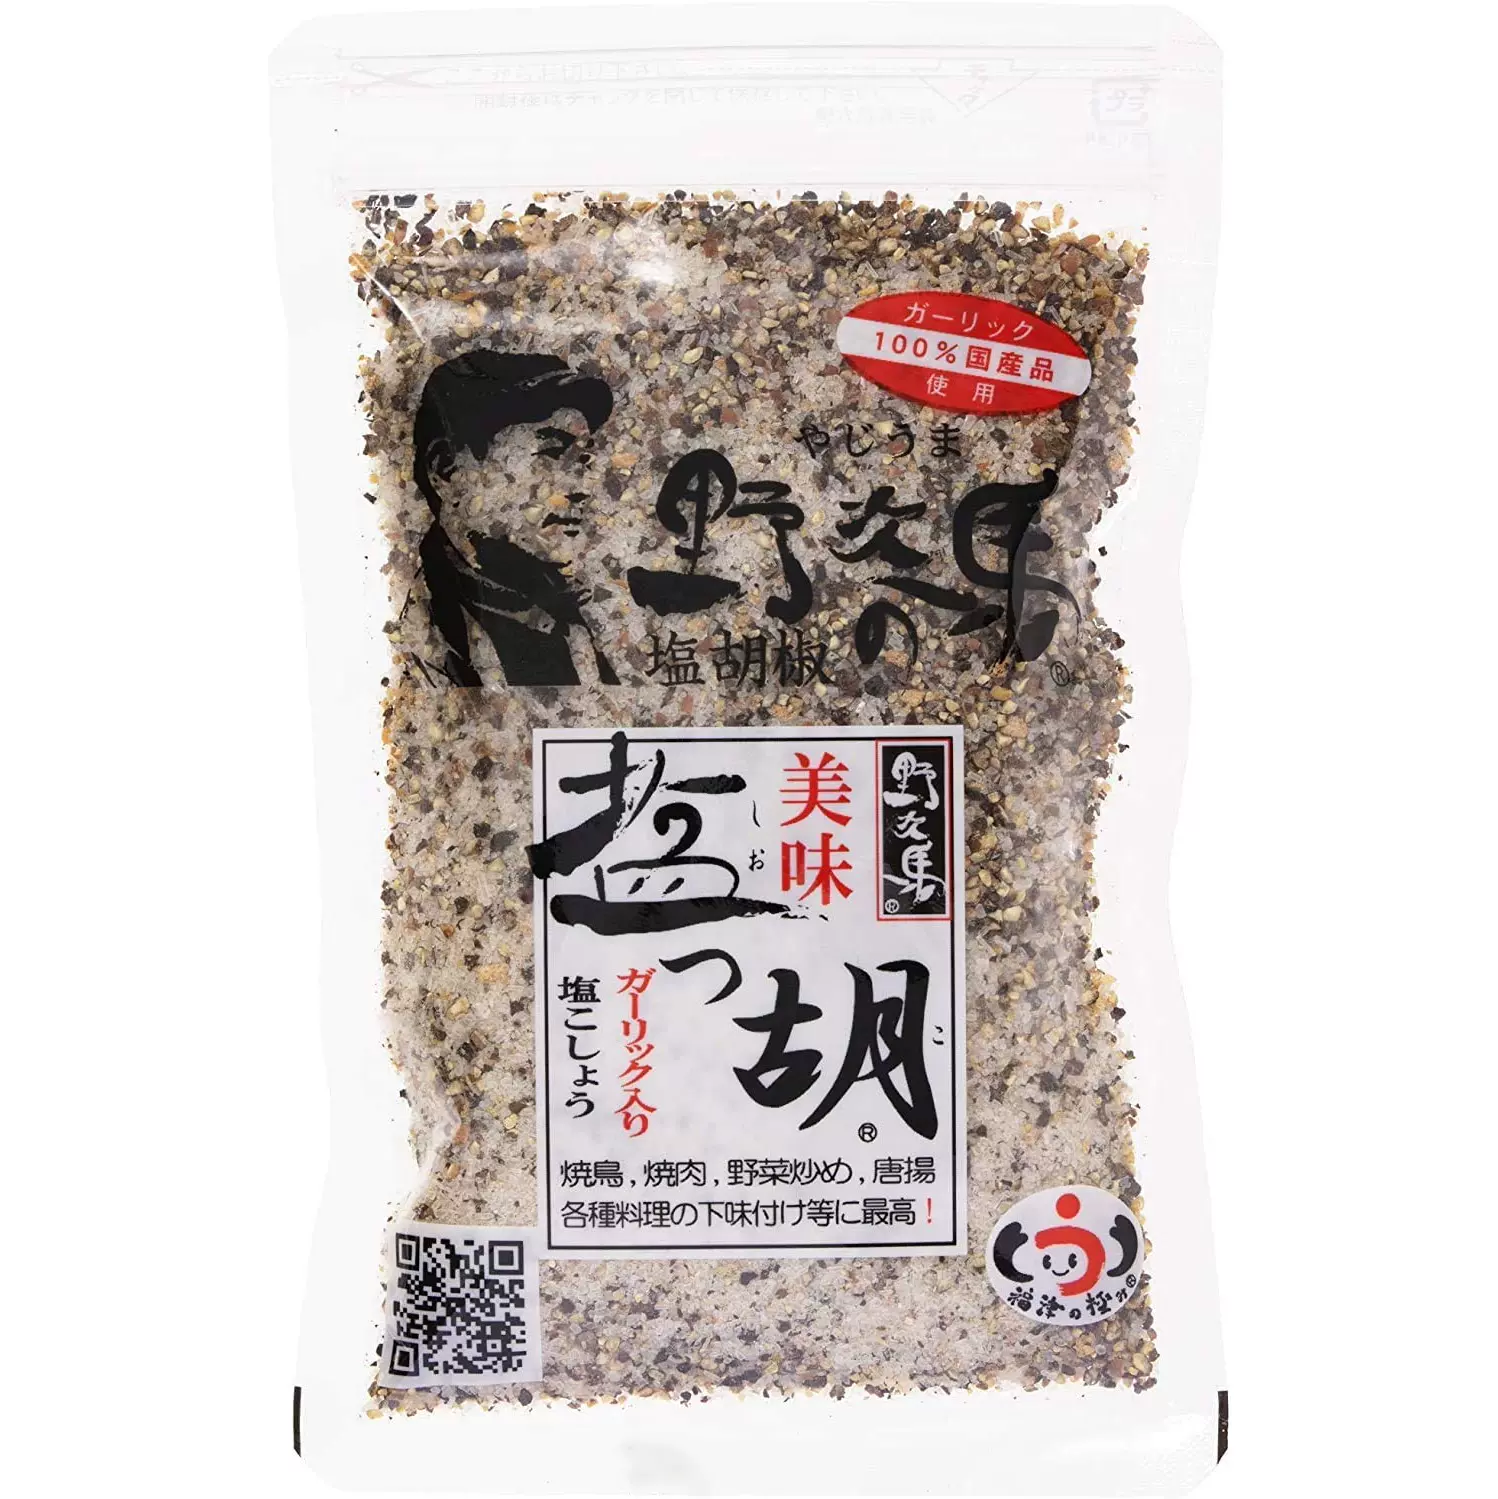 野次马盐胡椒日本原装进口烧肉料理调味料业务用1g袋装现货包邮 Taobao